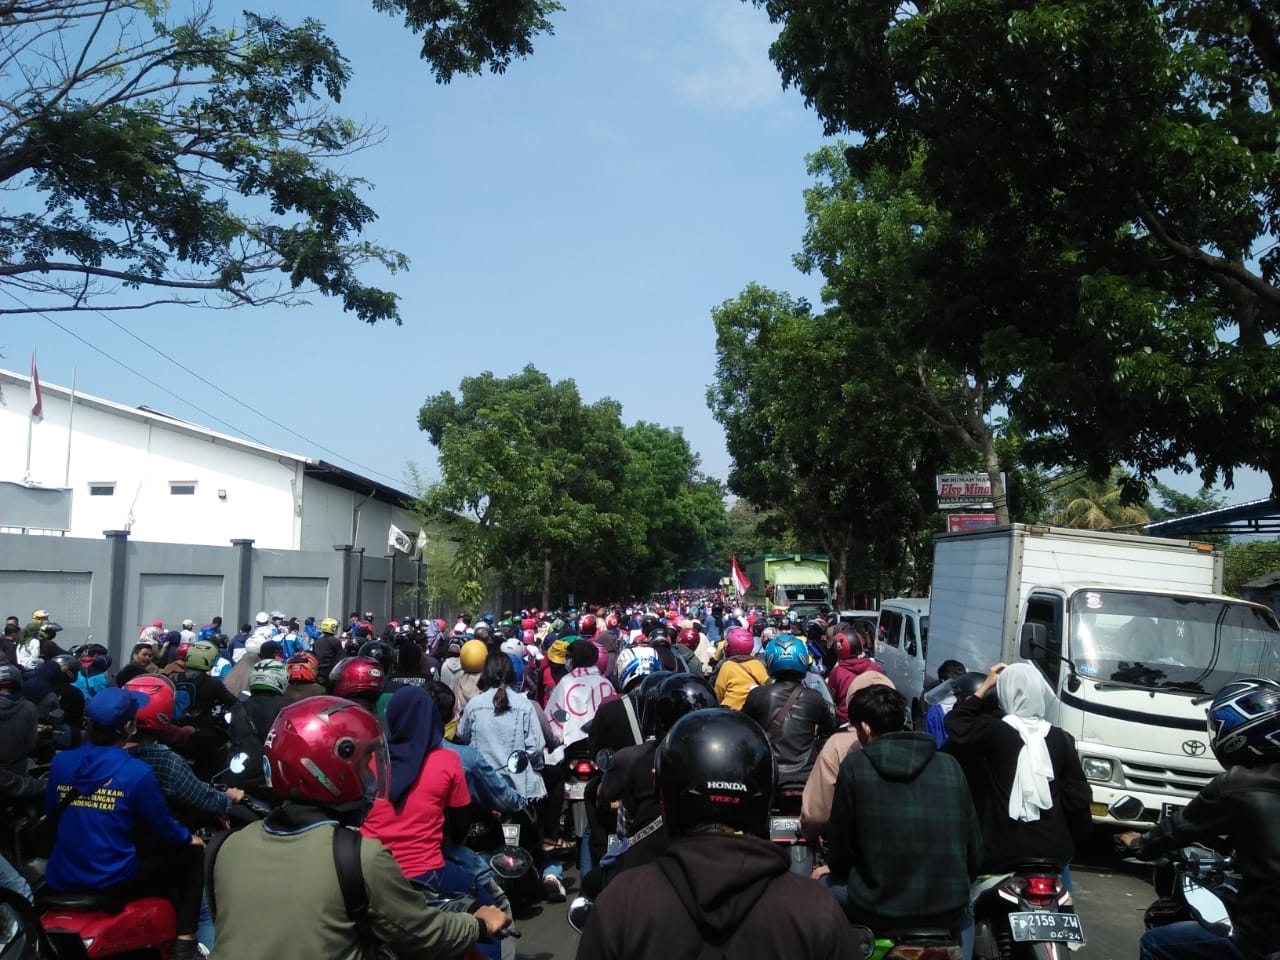 Ribuan Buruh di Cianjur Kembali Gelar Aksi Demo